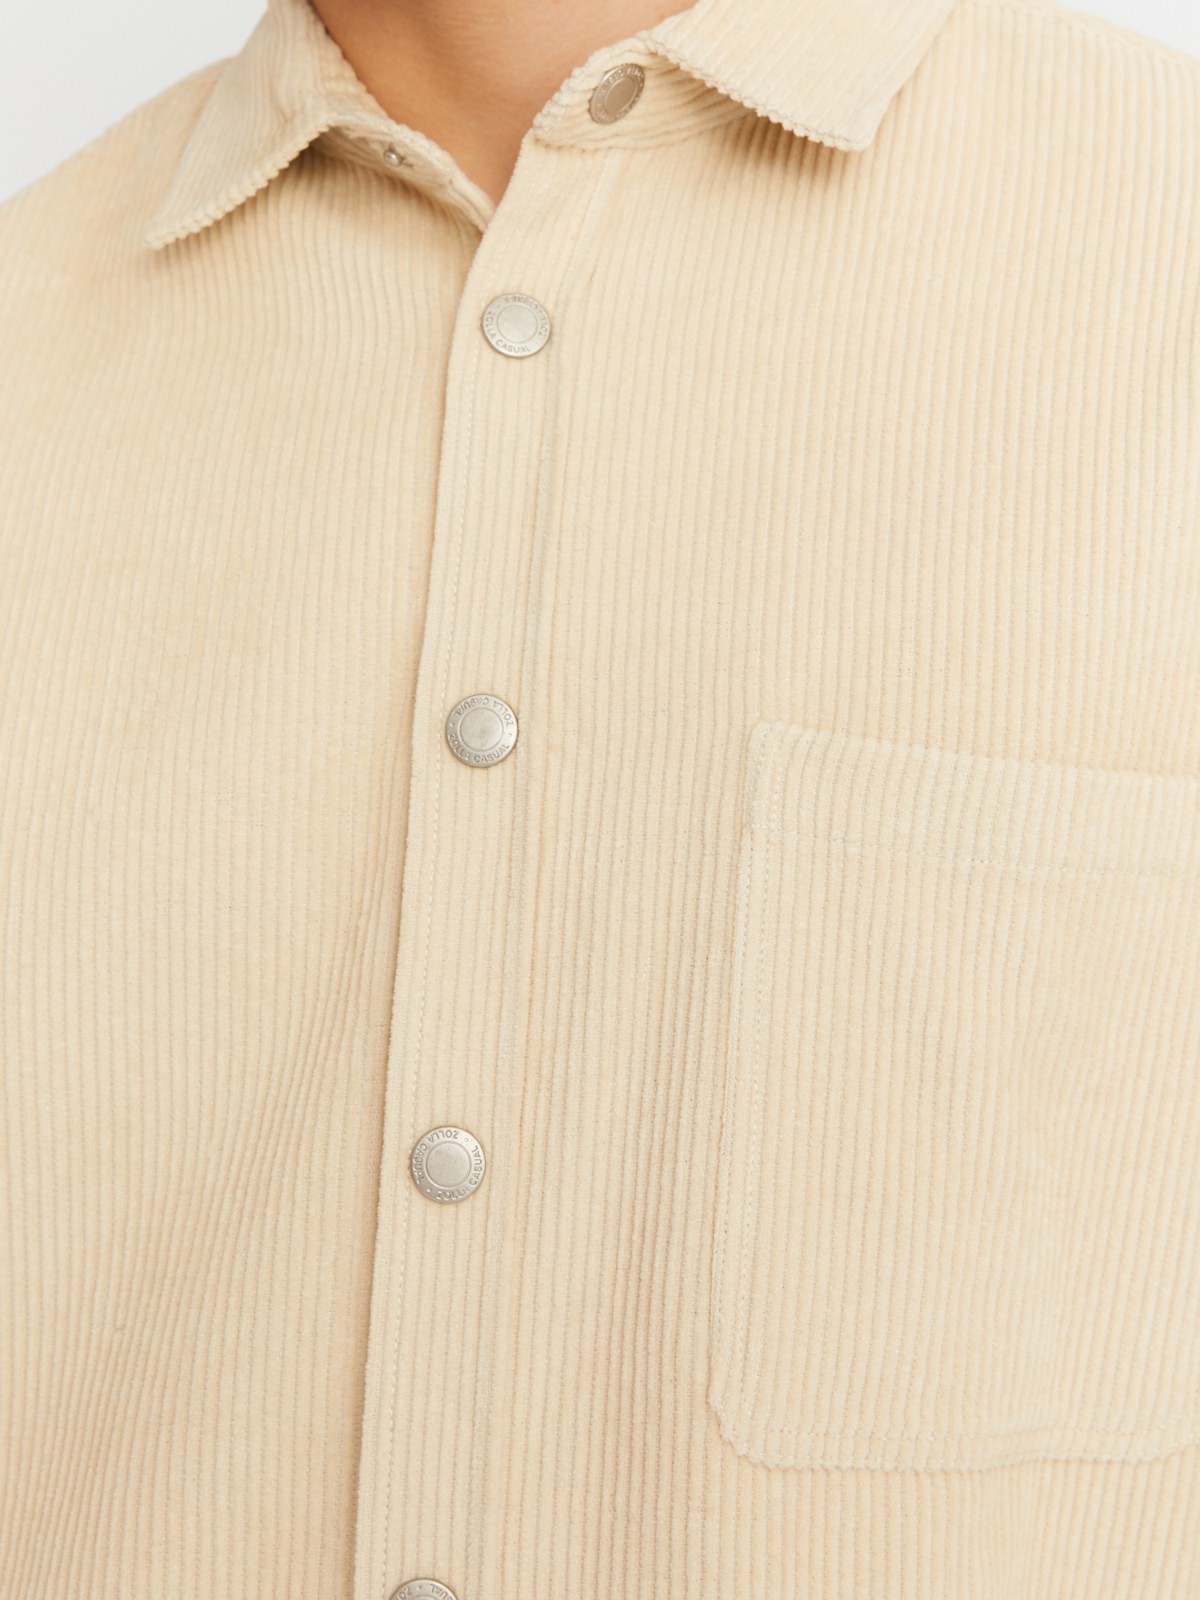 Вельветовая куртка-рубашка из хлопка с длинным рукавом zolla 21342214R041, цвет горчичный, размер M - фото 4